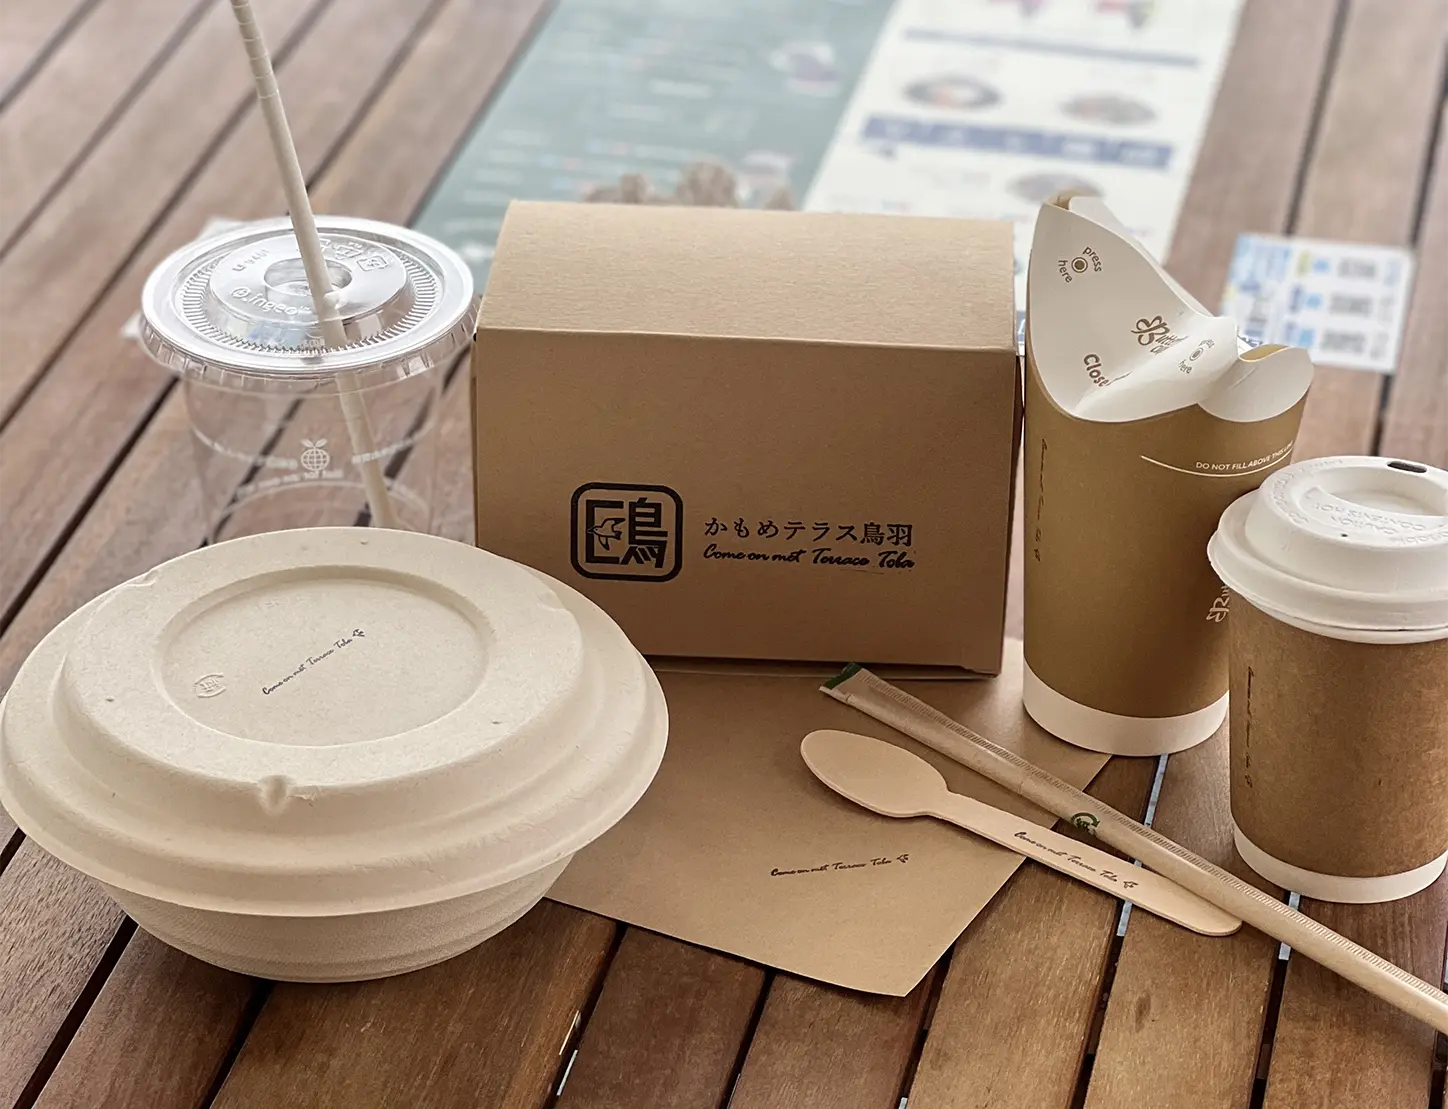 コーヒカップ・ストロー（紙製）、スプーン（木製）、どんぶり（竹バガス製）、コップ（植物性プラスチック）